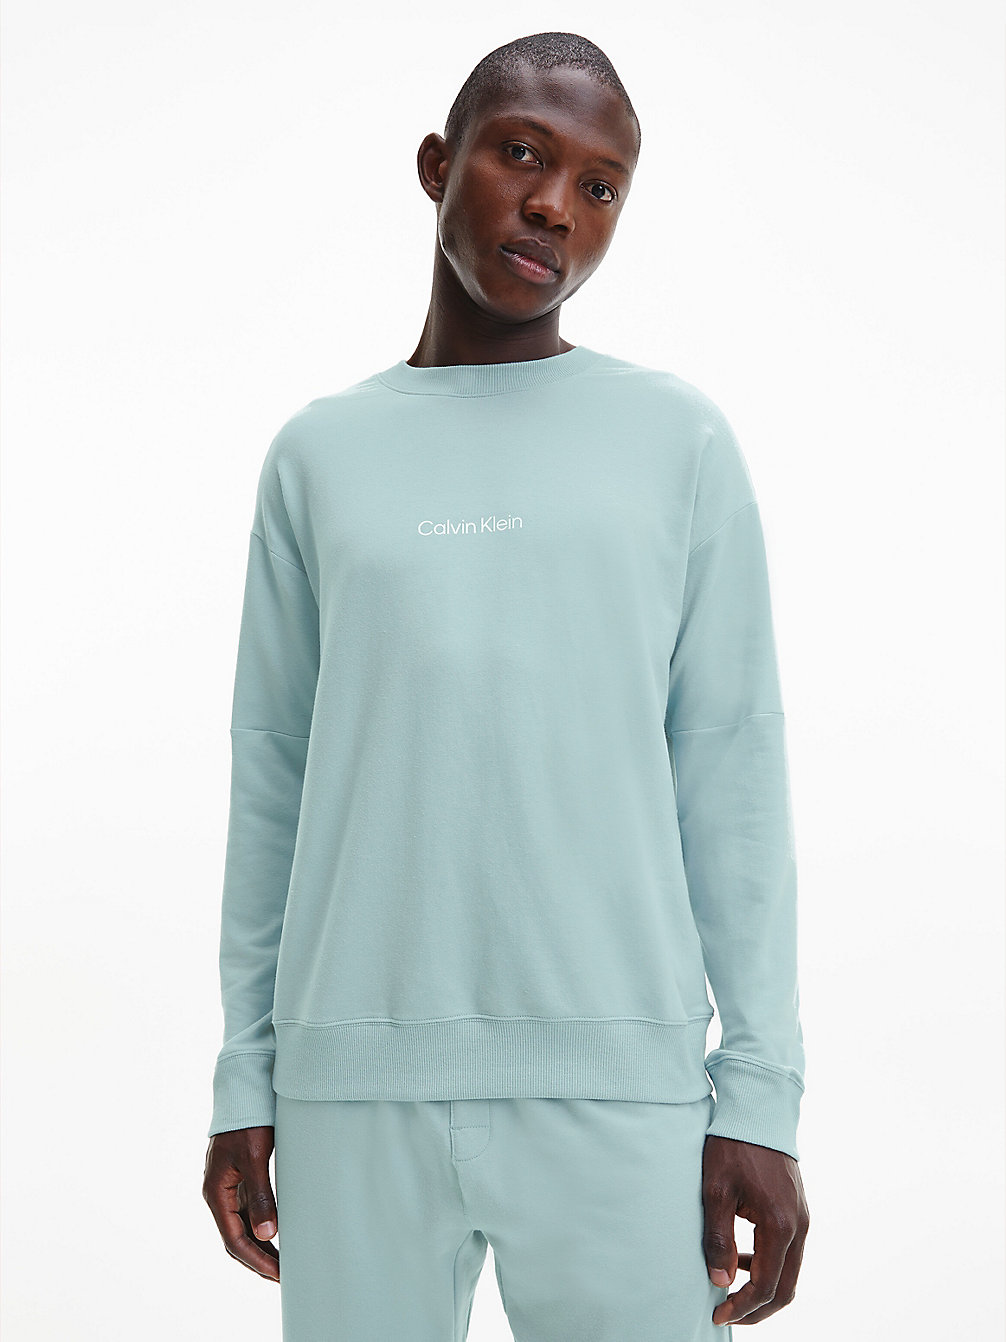 TOURMALINE > Lounge-Sweatshirt – Modern Structure > undefined Herren - Calvin Klein